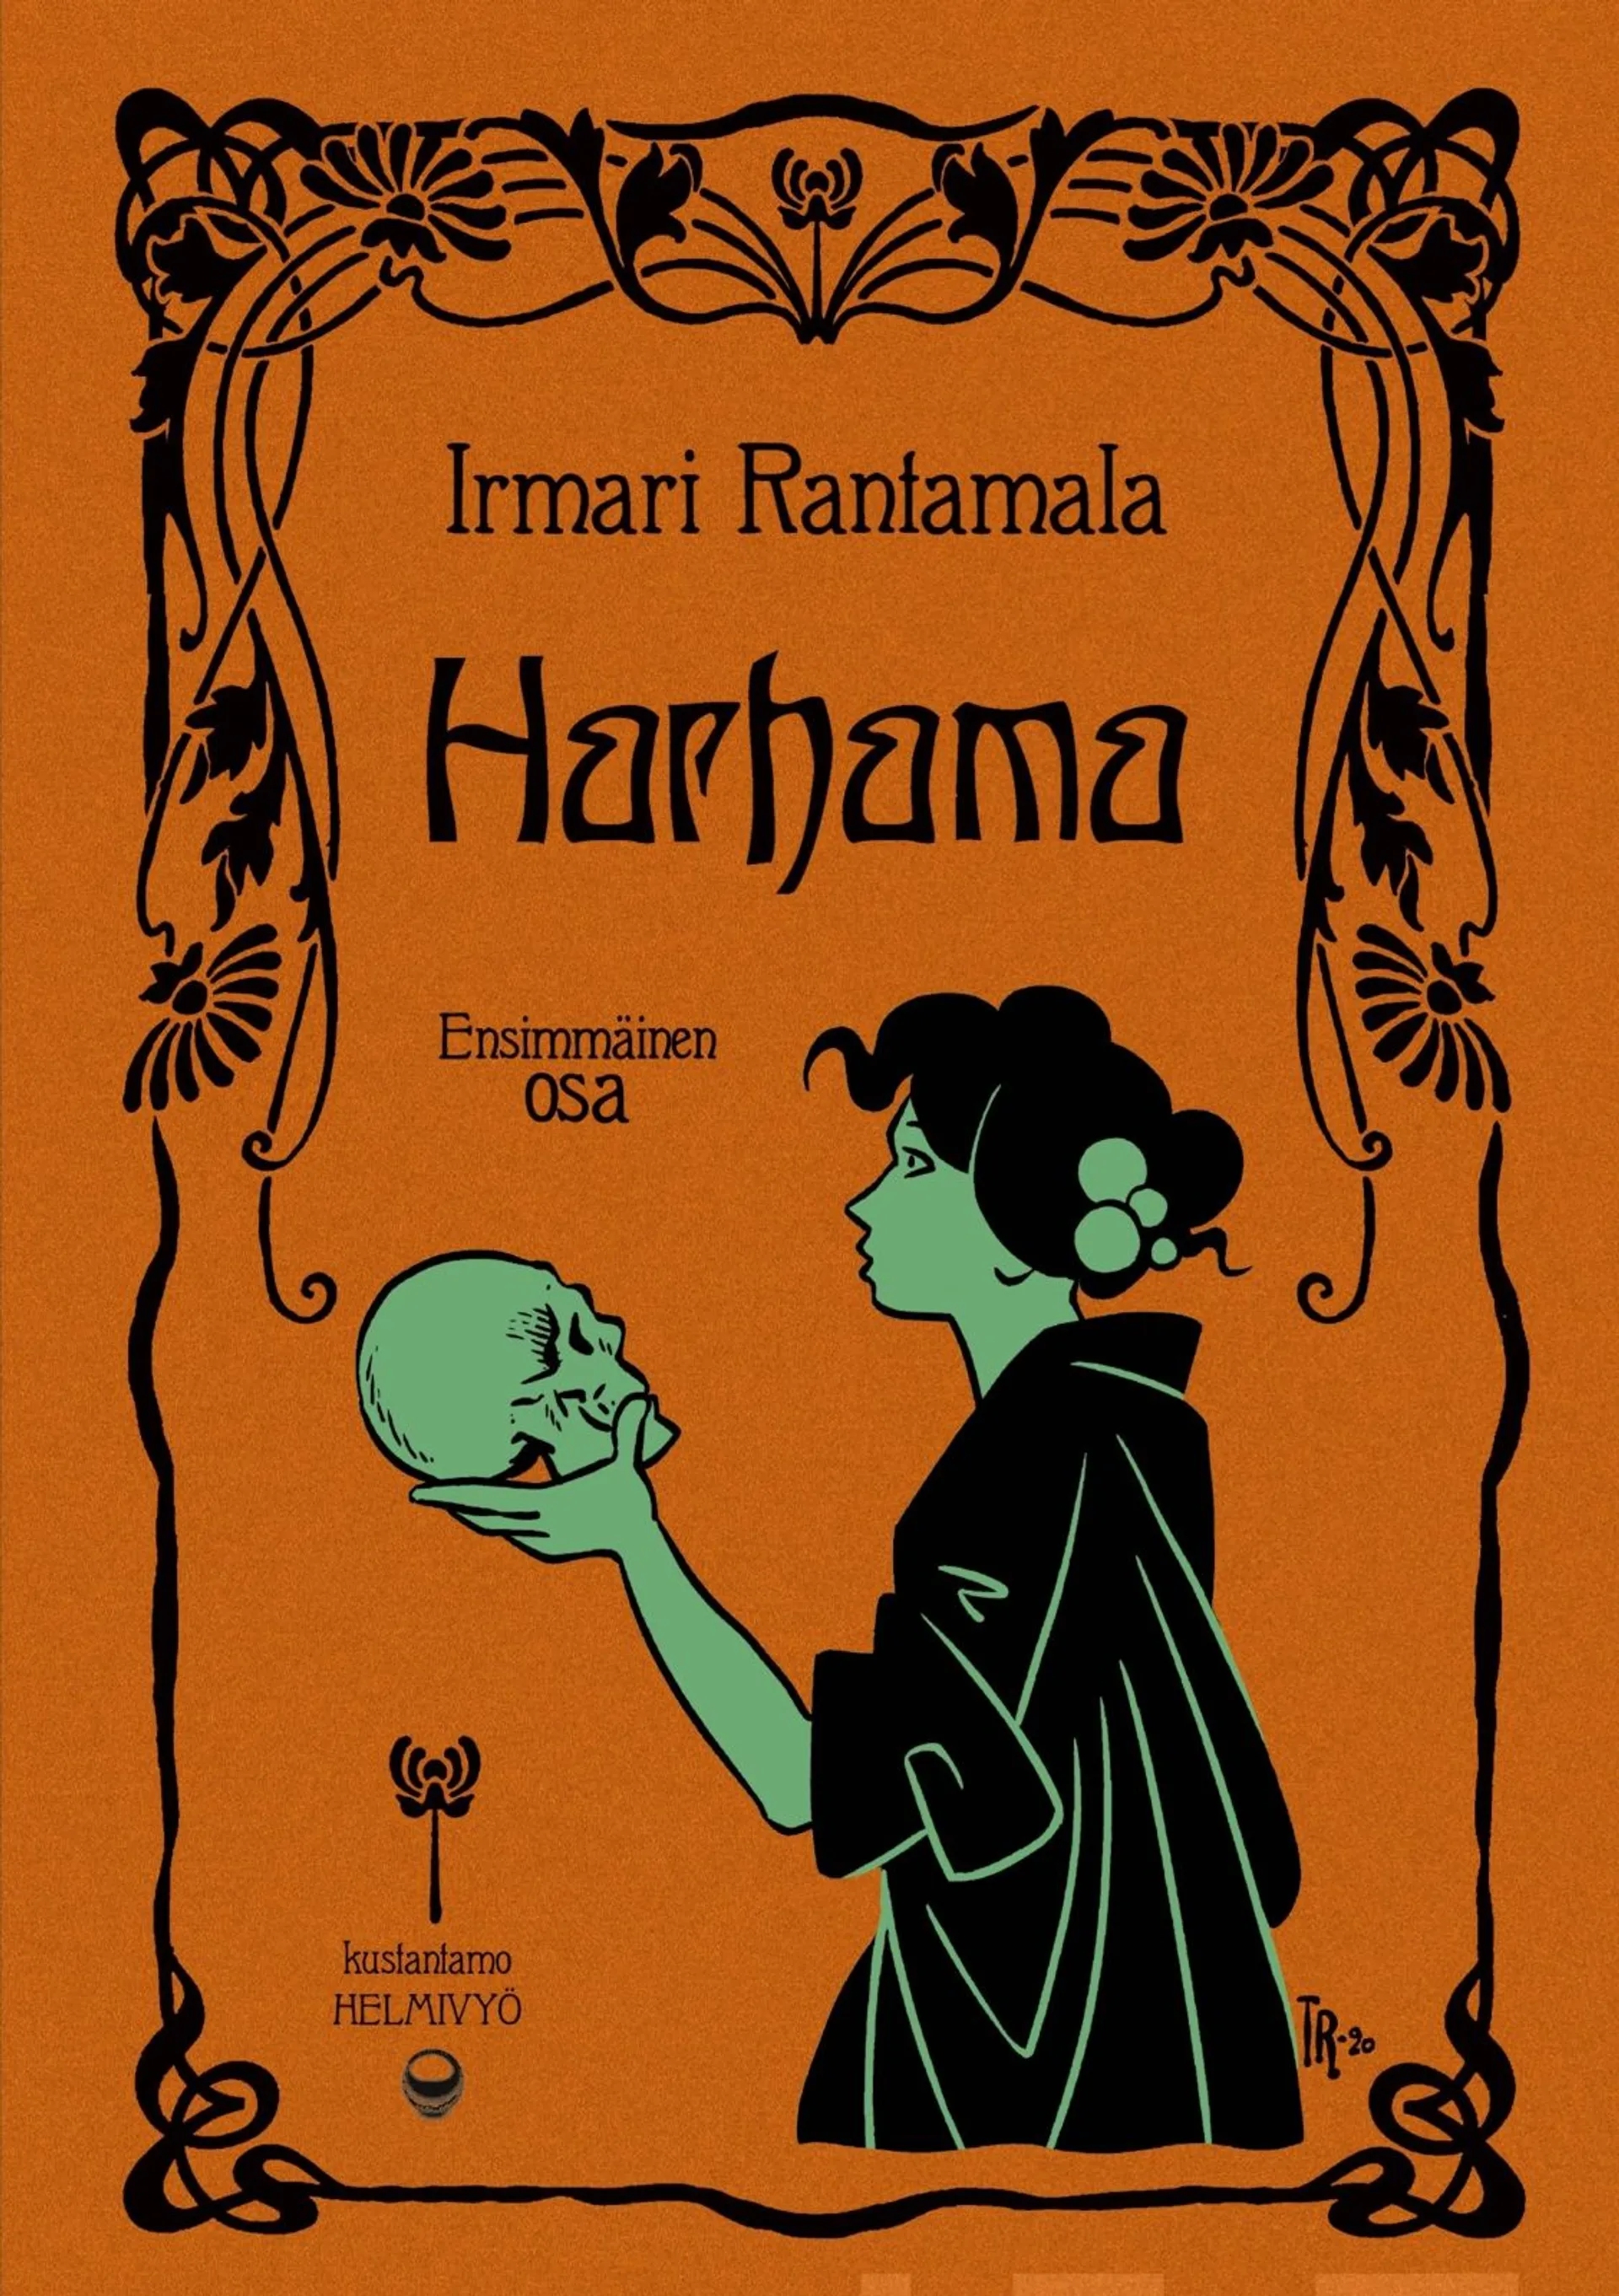 Rantamala, Harhama I